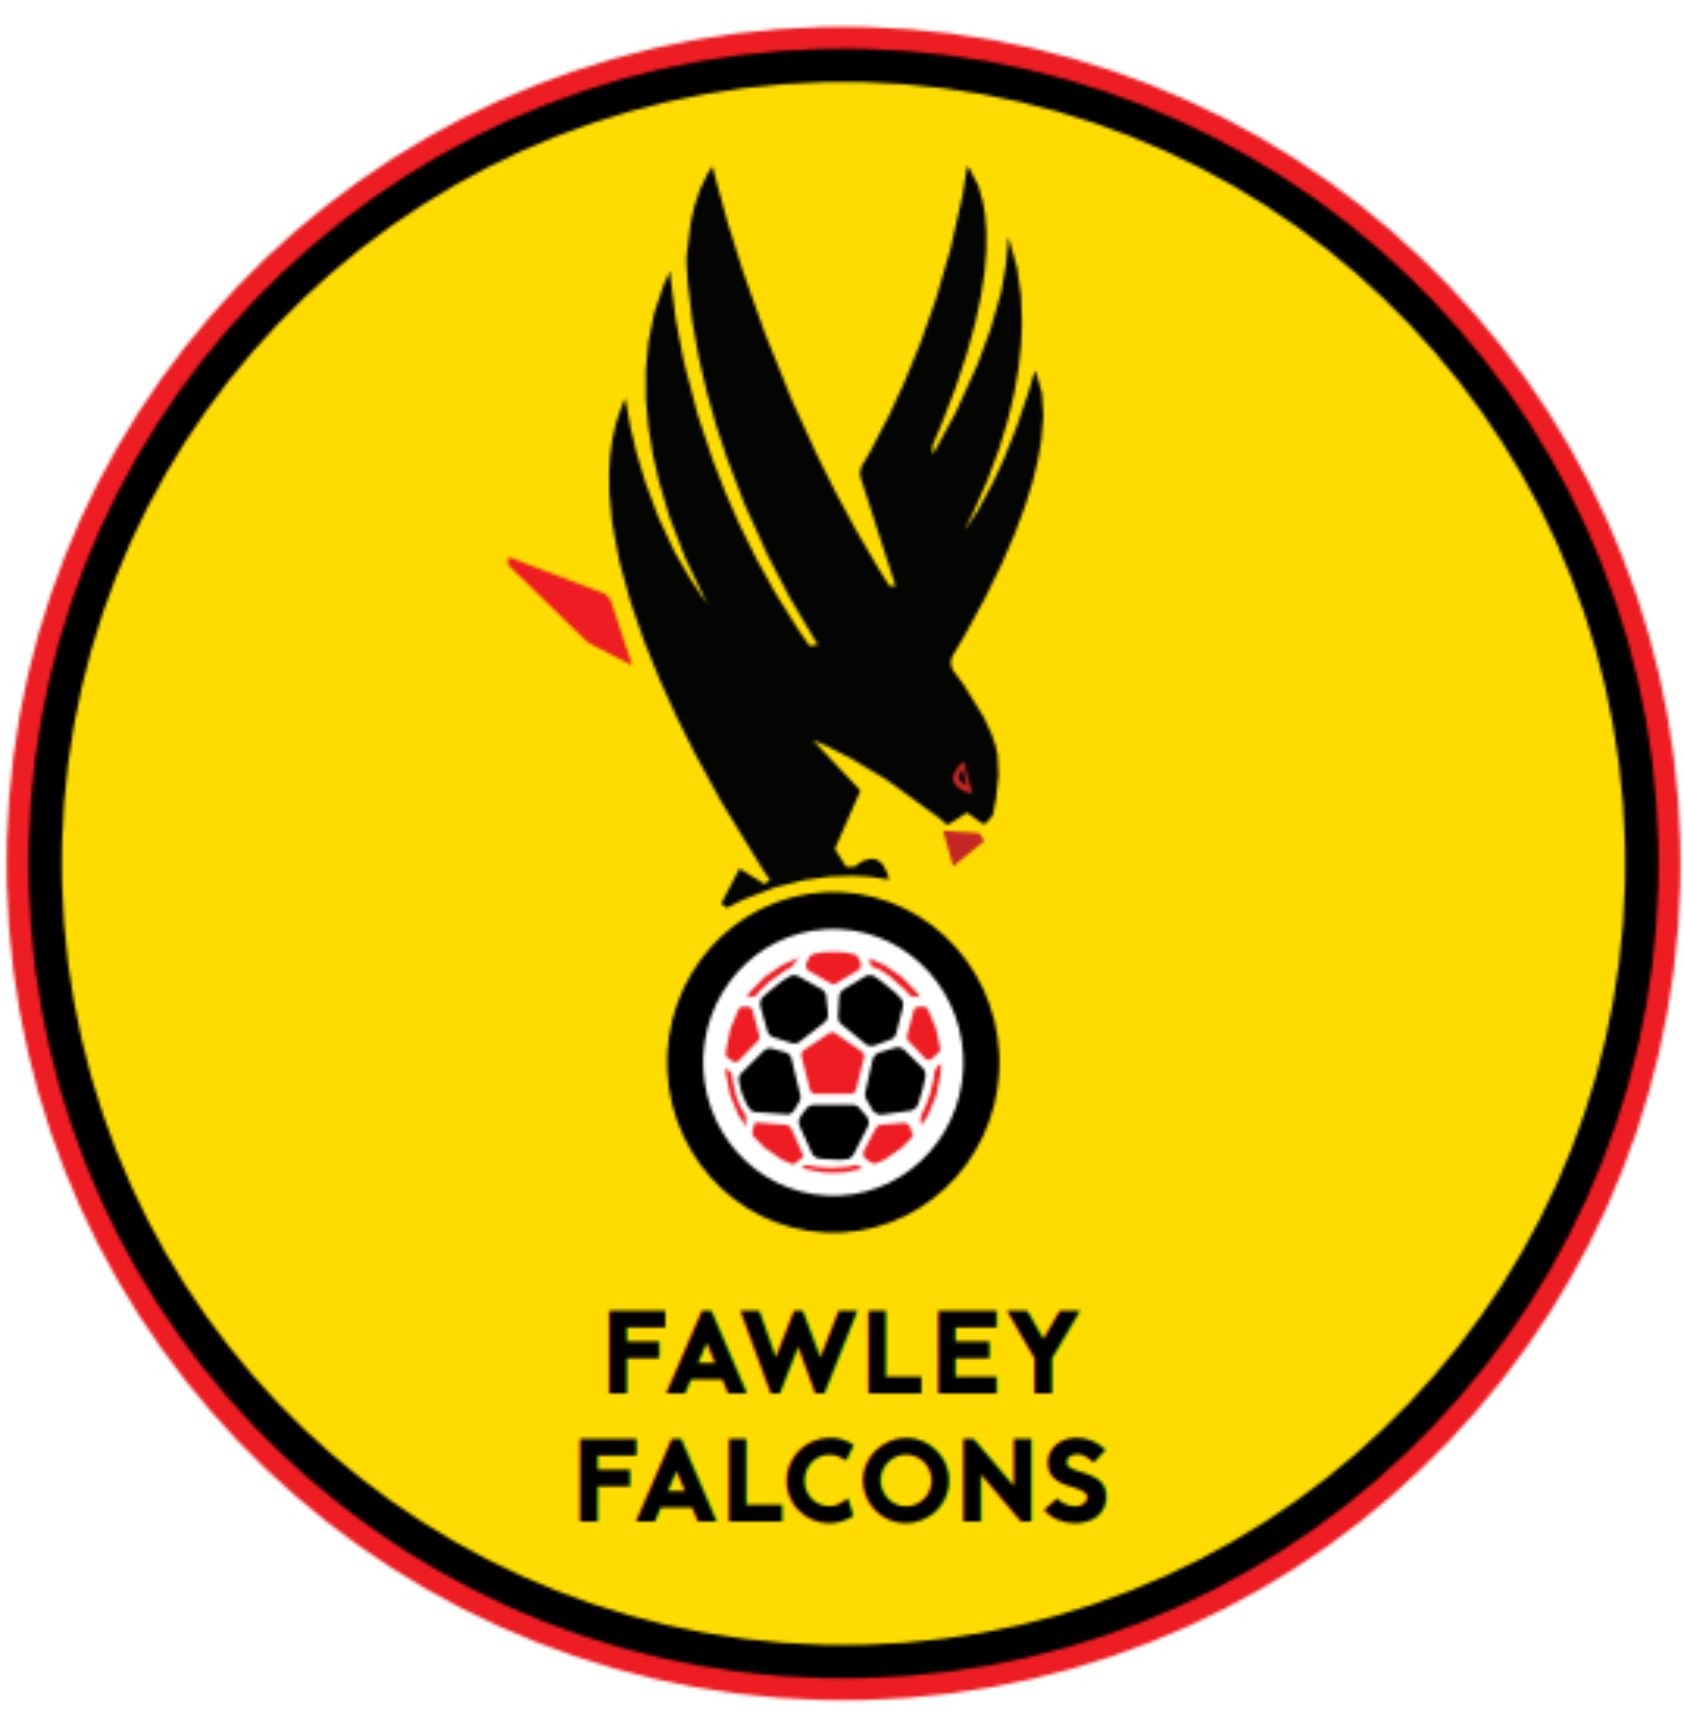 Fawley Falcons